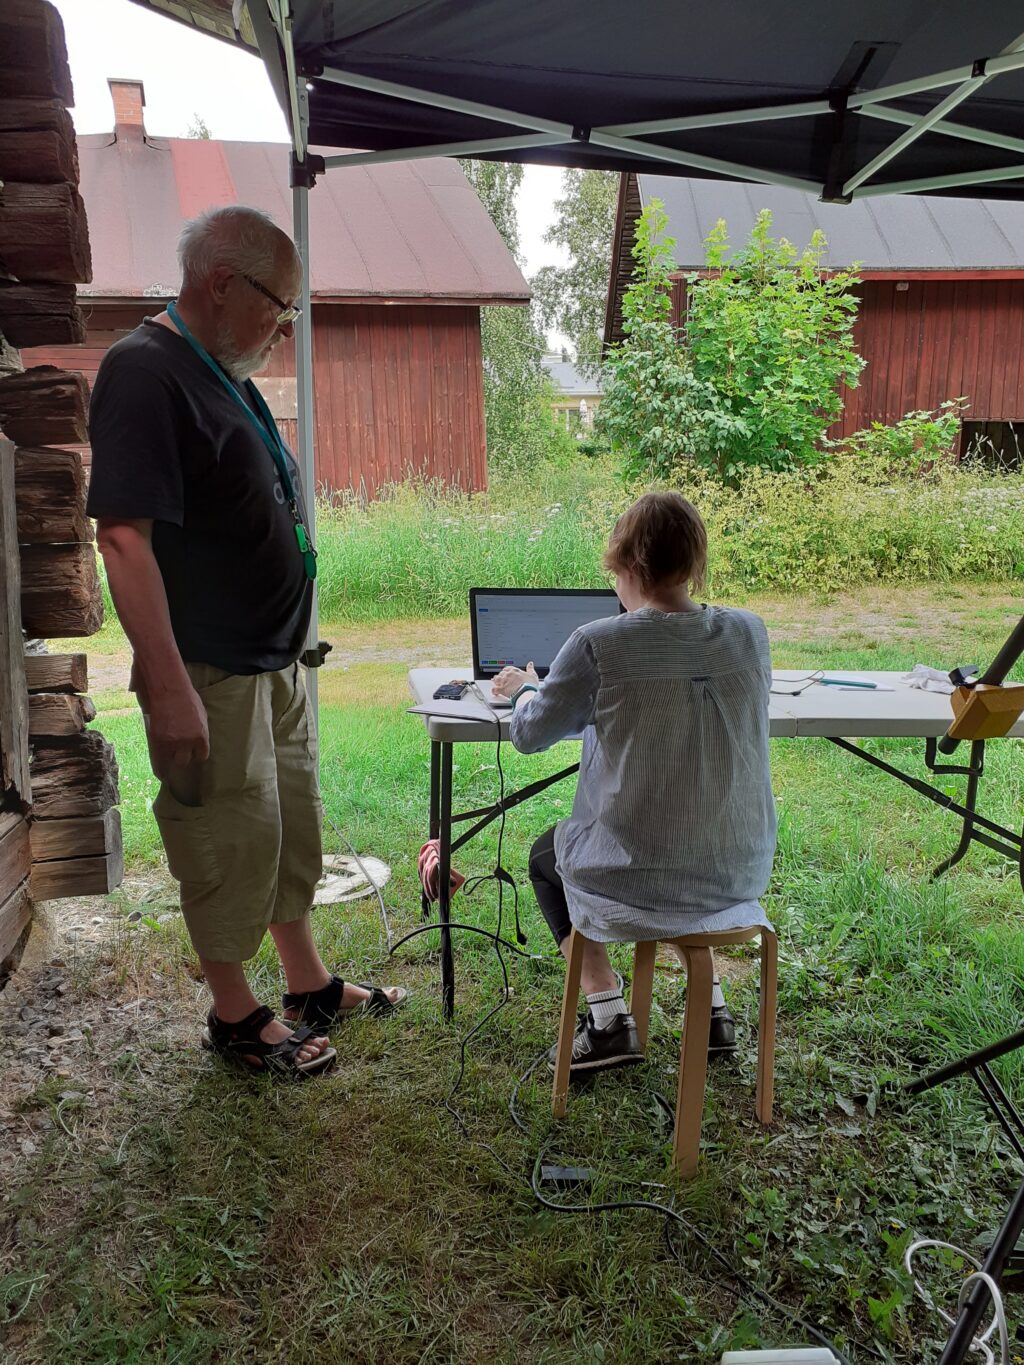 Kuvan vasemmassa laidassa mies, kuvan keskellä istuu nainen pöydän ääressä. Molemmat henkilöt ovat pop up-teltan alla, nainen tietokoneella. taustalla näkyy punamullattuja museoraitin rakennuksia, korkeaa heinää ja lehtipuita. Kuva on otettu kesällä pilvisenä päivänä.